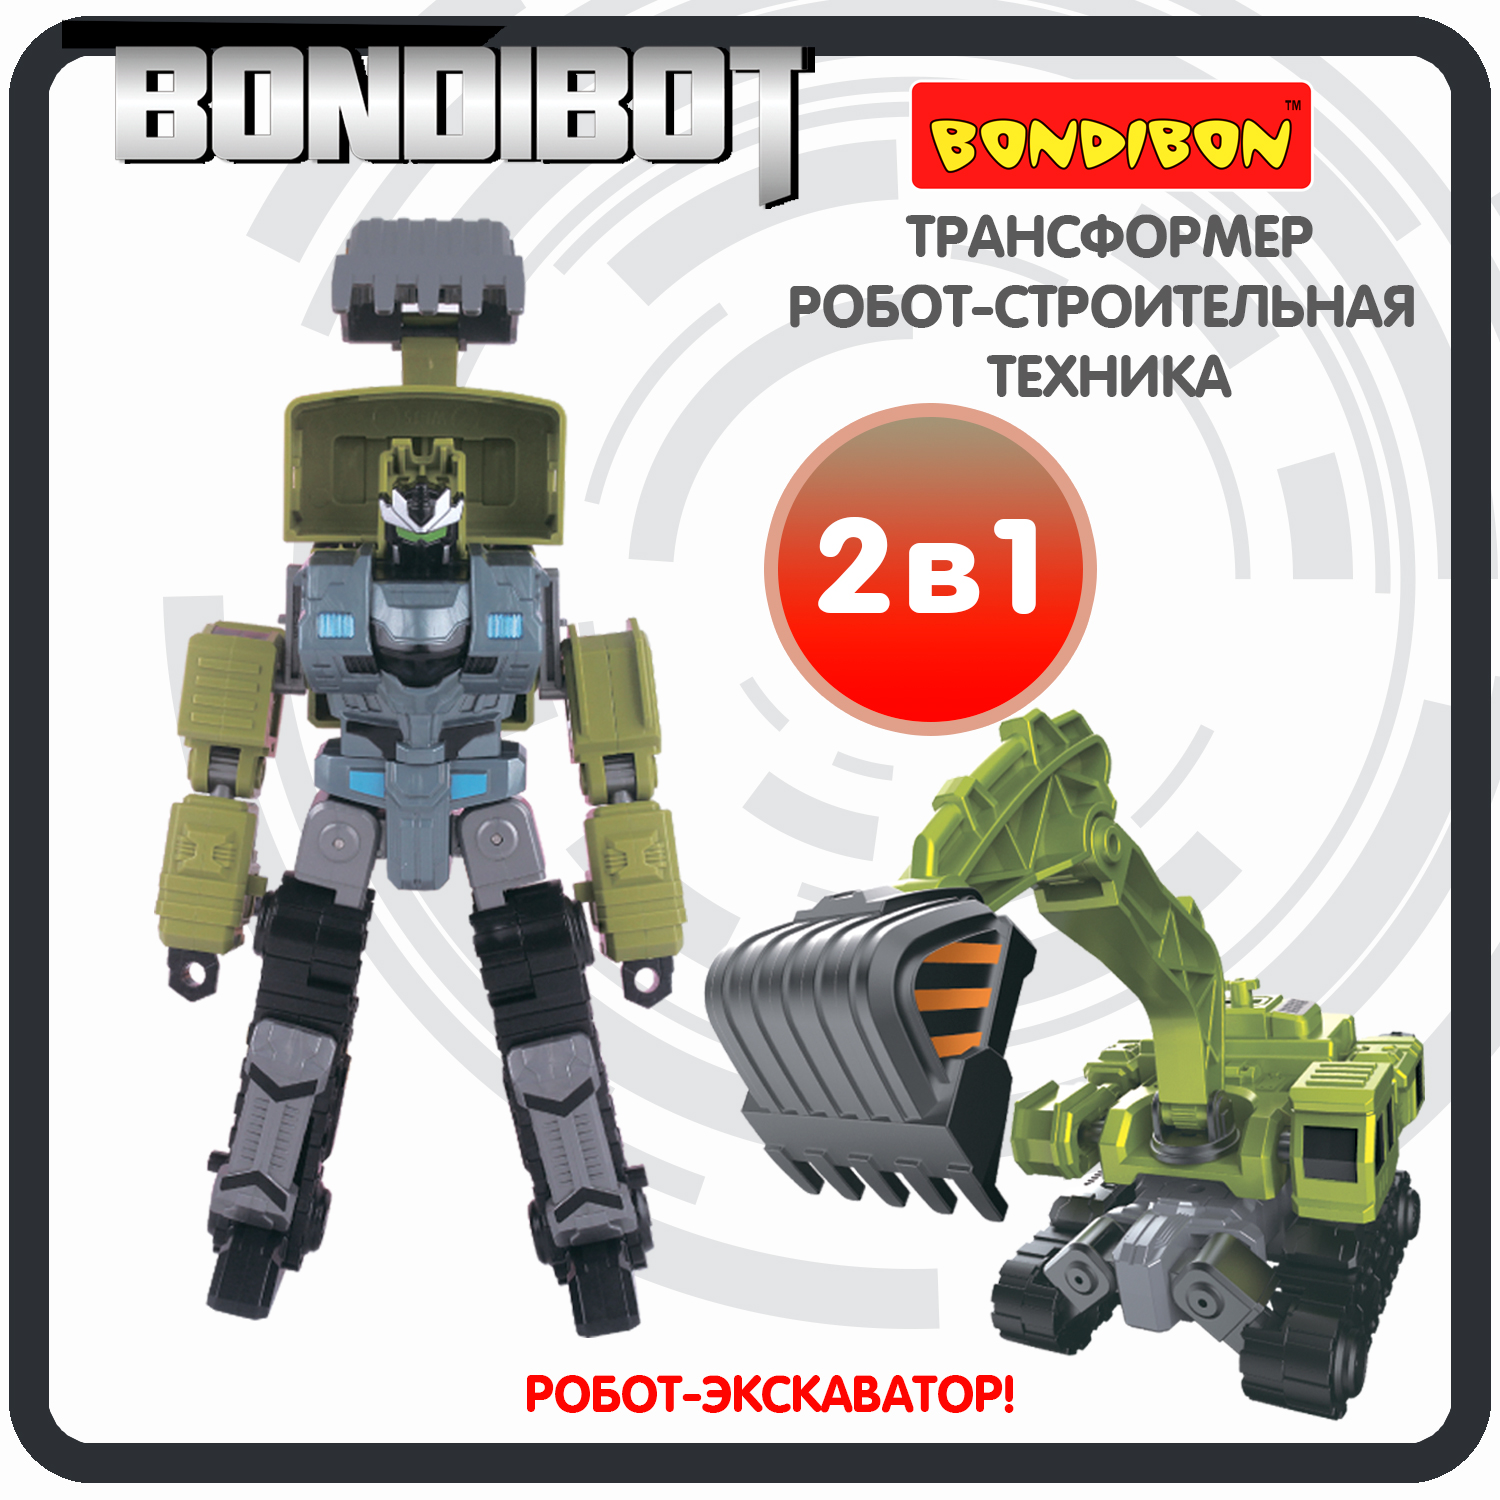 Трансформер робот-строительная техника, 2в1 BONDIBOT Bondibon, экскаватор / ВВ6054 робот трансформер 2в1 bondibon bondibot машинка экскаватор погрузчик